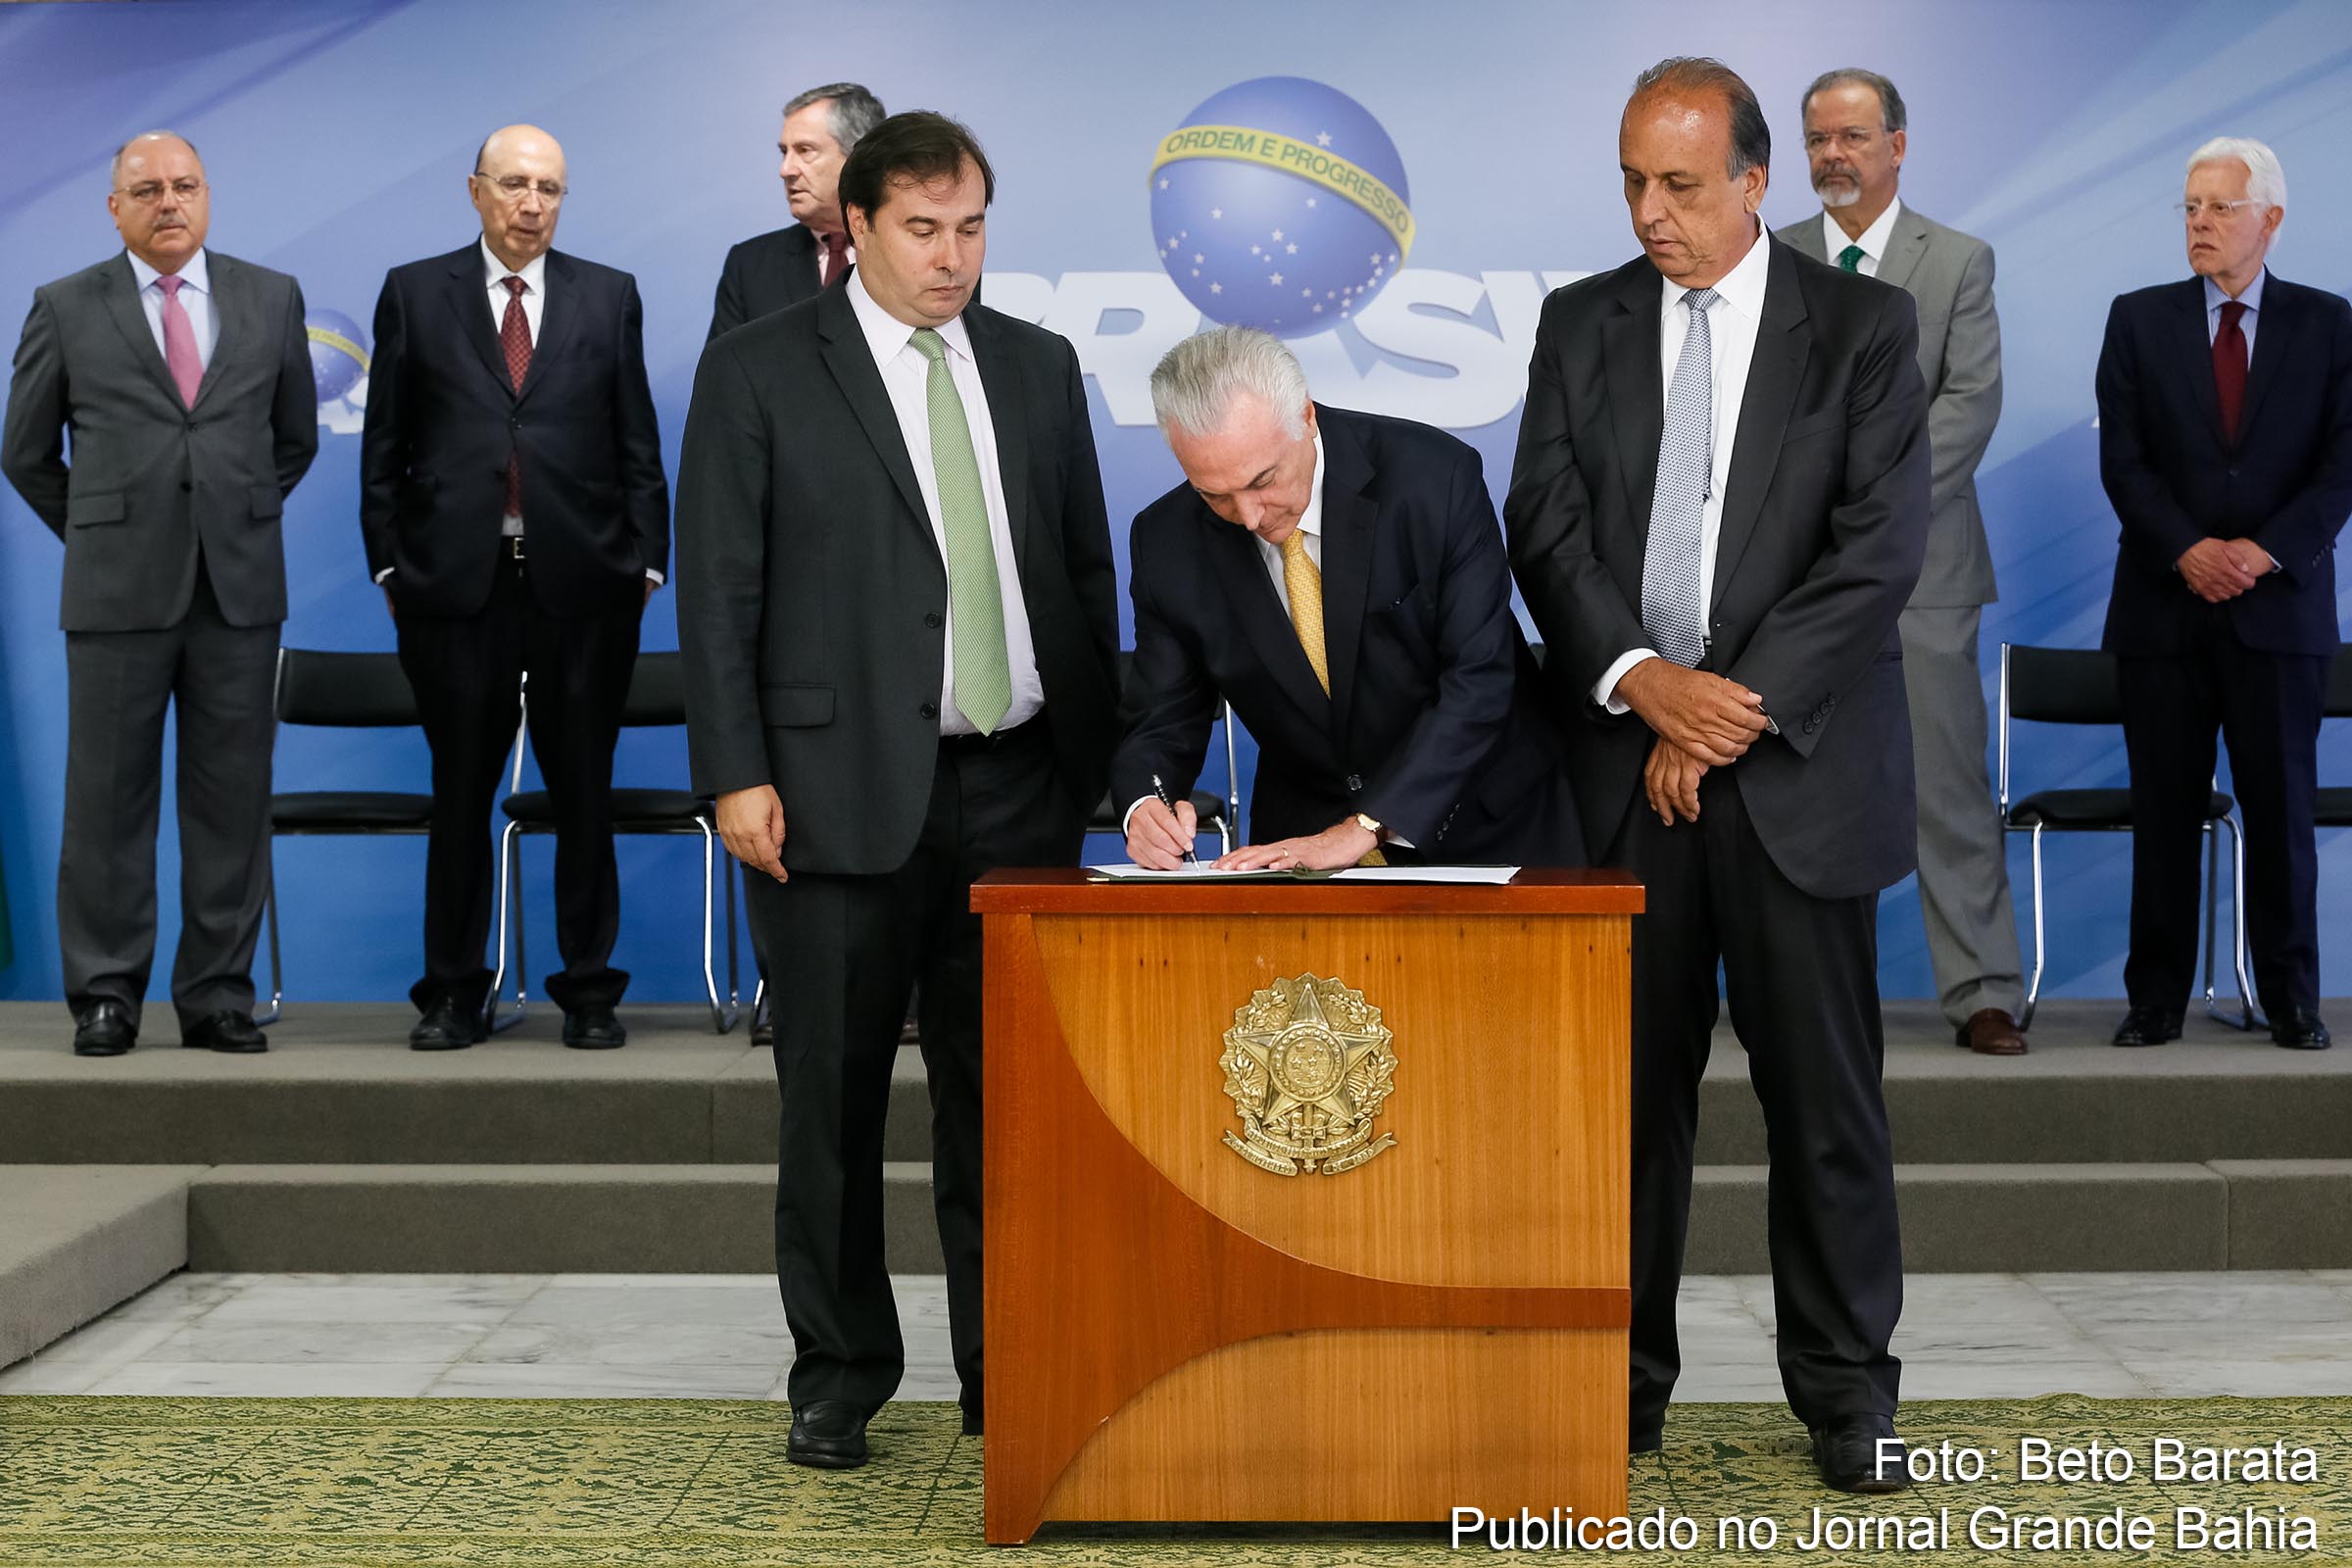 Presidente Michel Temer assina o decreto de intervenção federal no estado do Rio de Janeiro, ao lado do presidente da Câmara, Rodrigo Maia, e do governador do estado, Luiz Fernando Pezão.